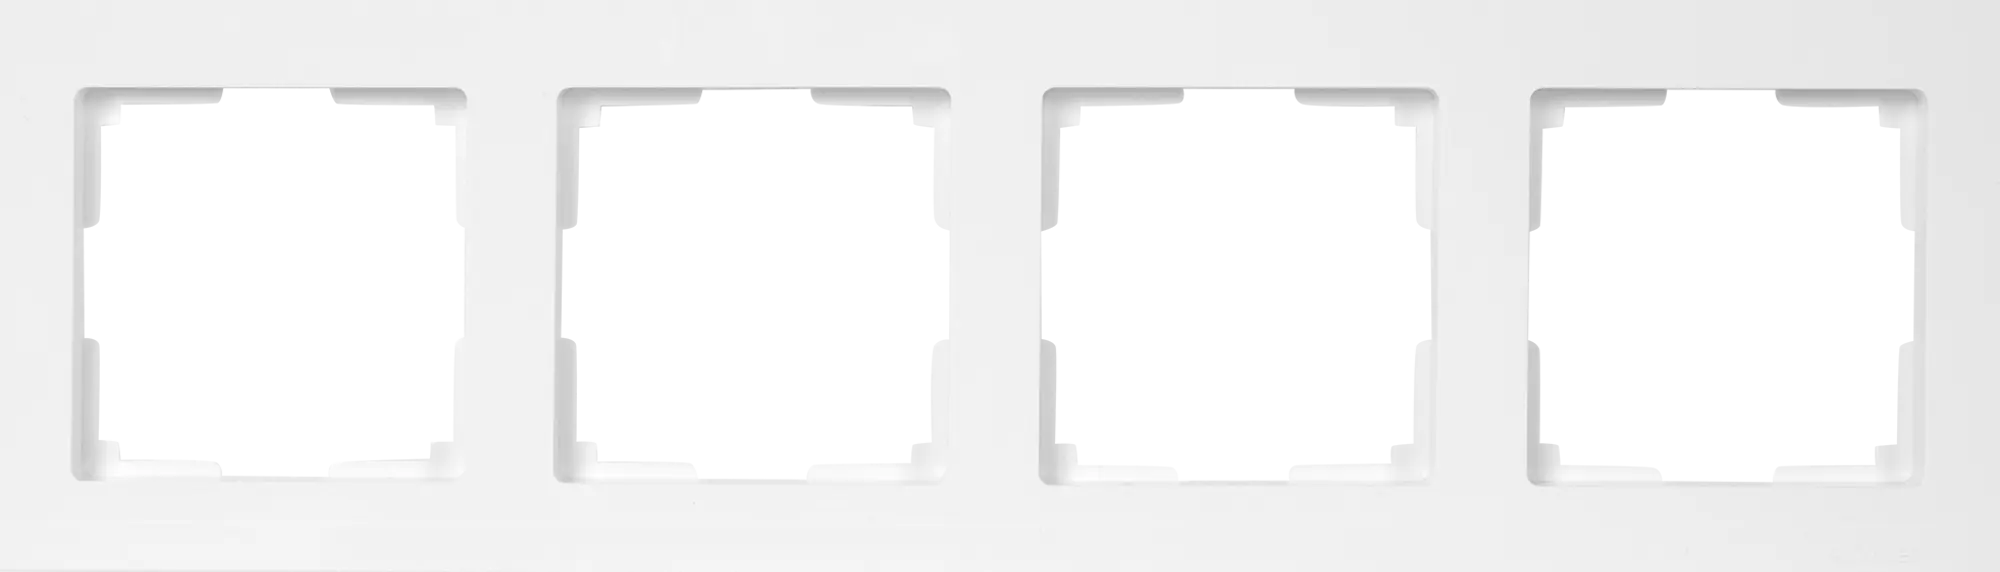 Рамка для розеток и выключателей Werkel Stark 4 поста, цвет белый рамка для розеток и выключателей werkel stark 2 поста белый